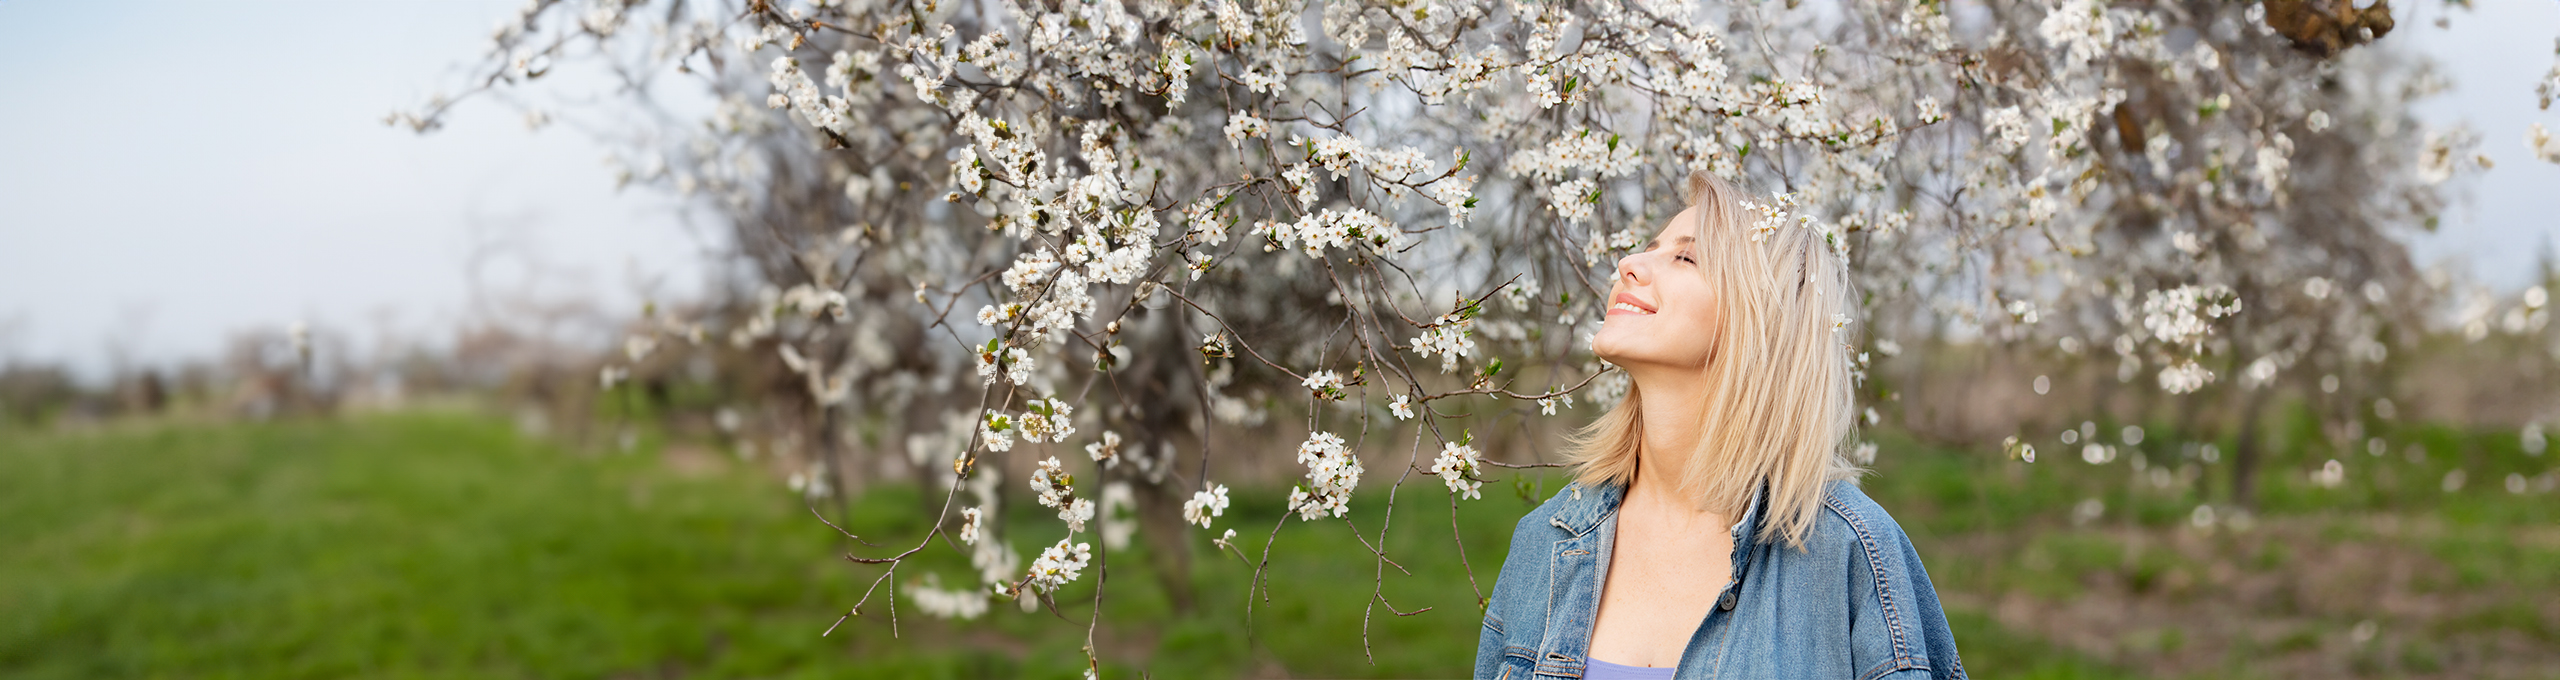 Glad kvinna står under ett blomstrande körsbärsträd i solen med slutna ögon.